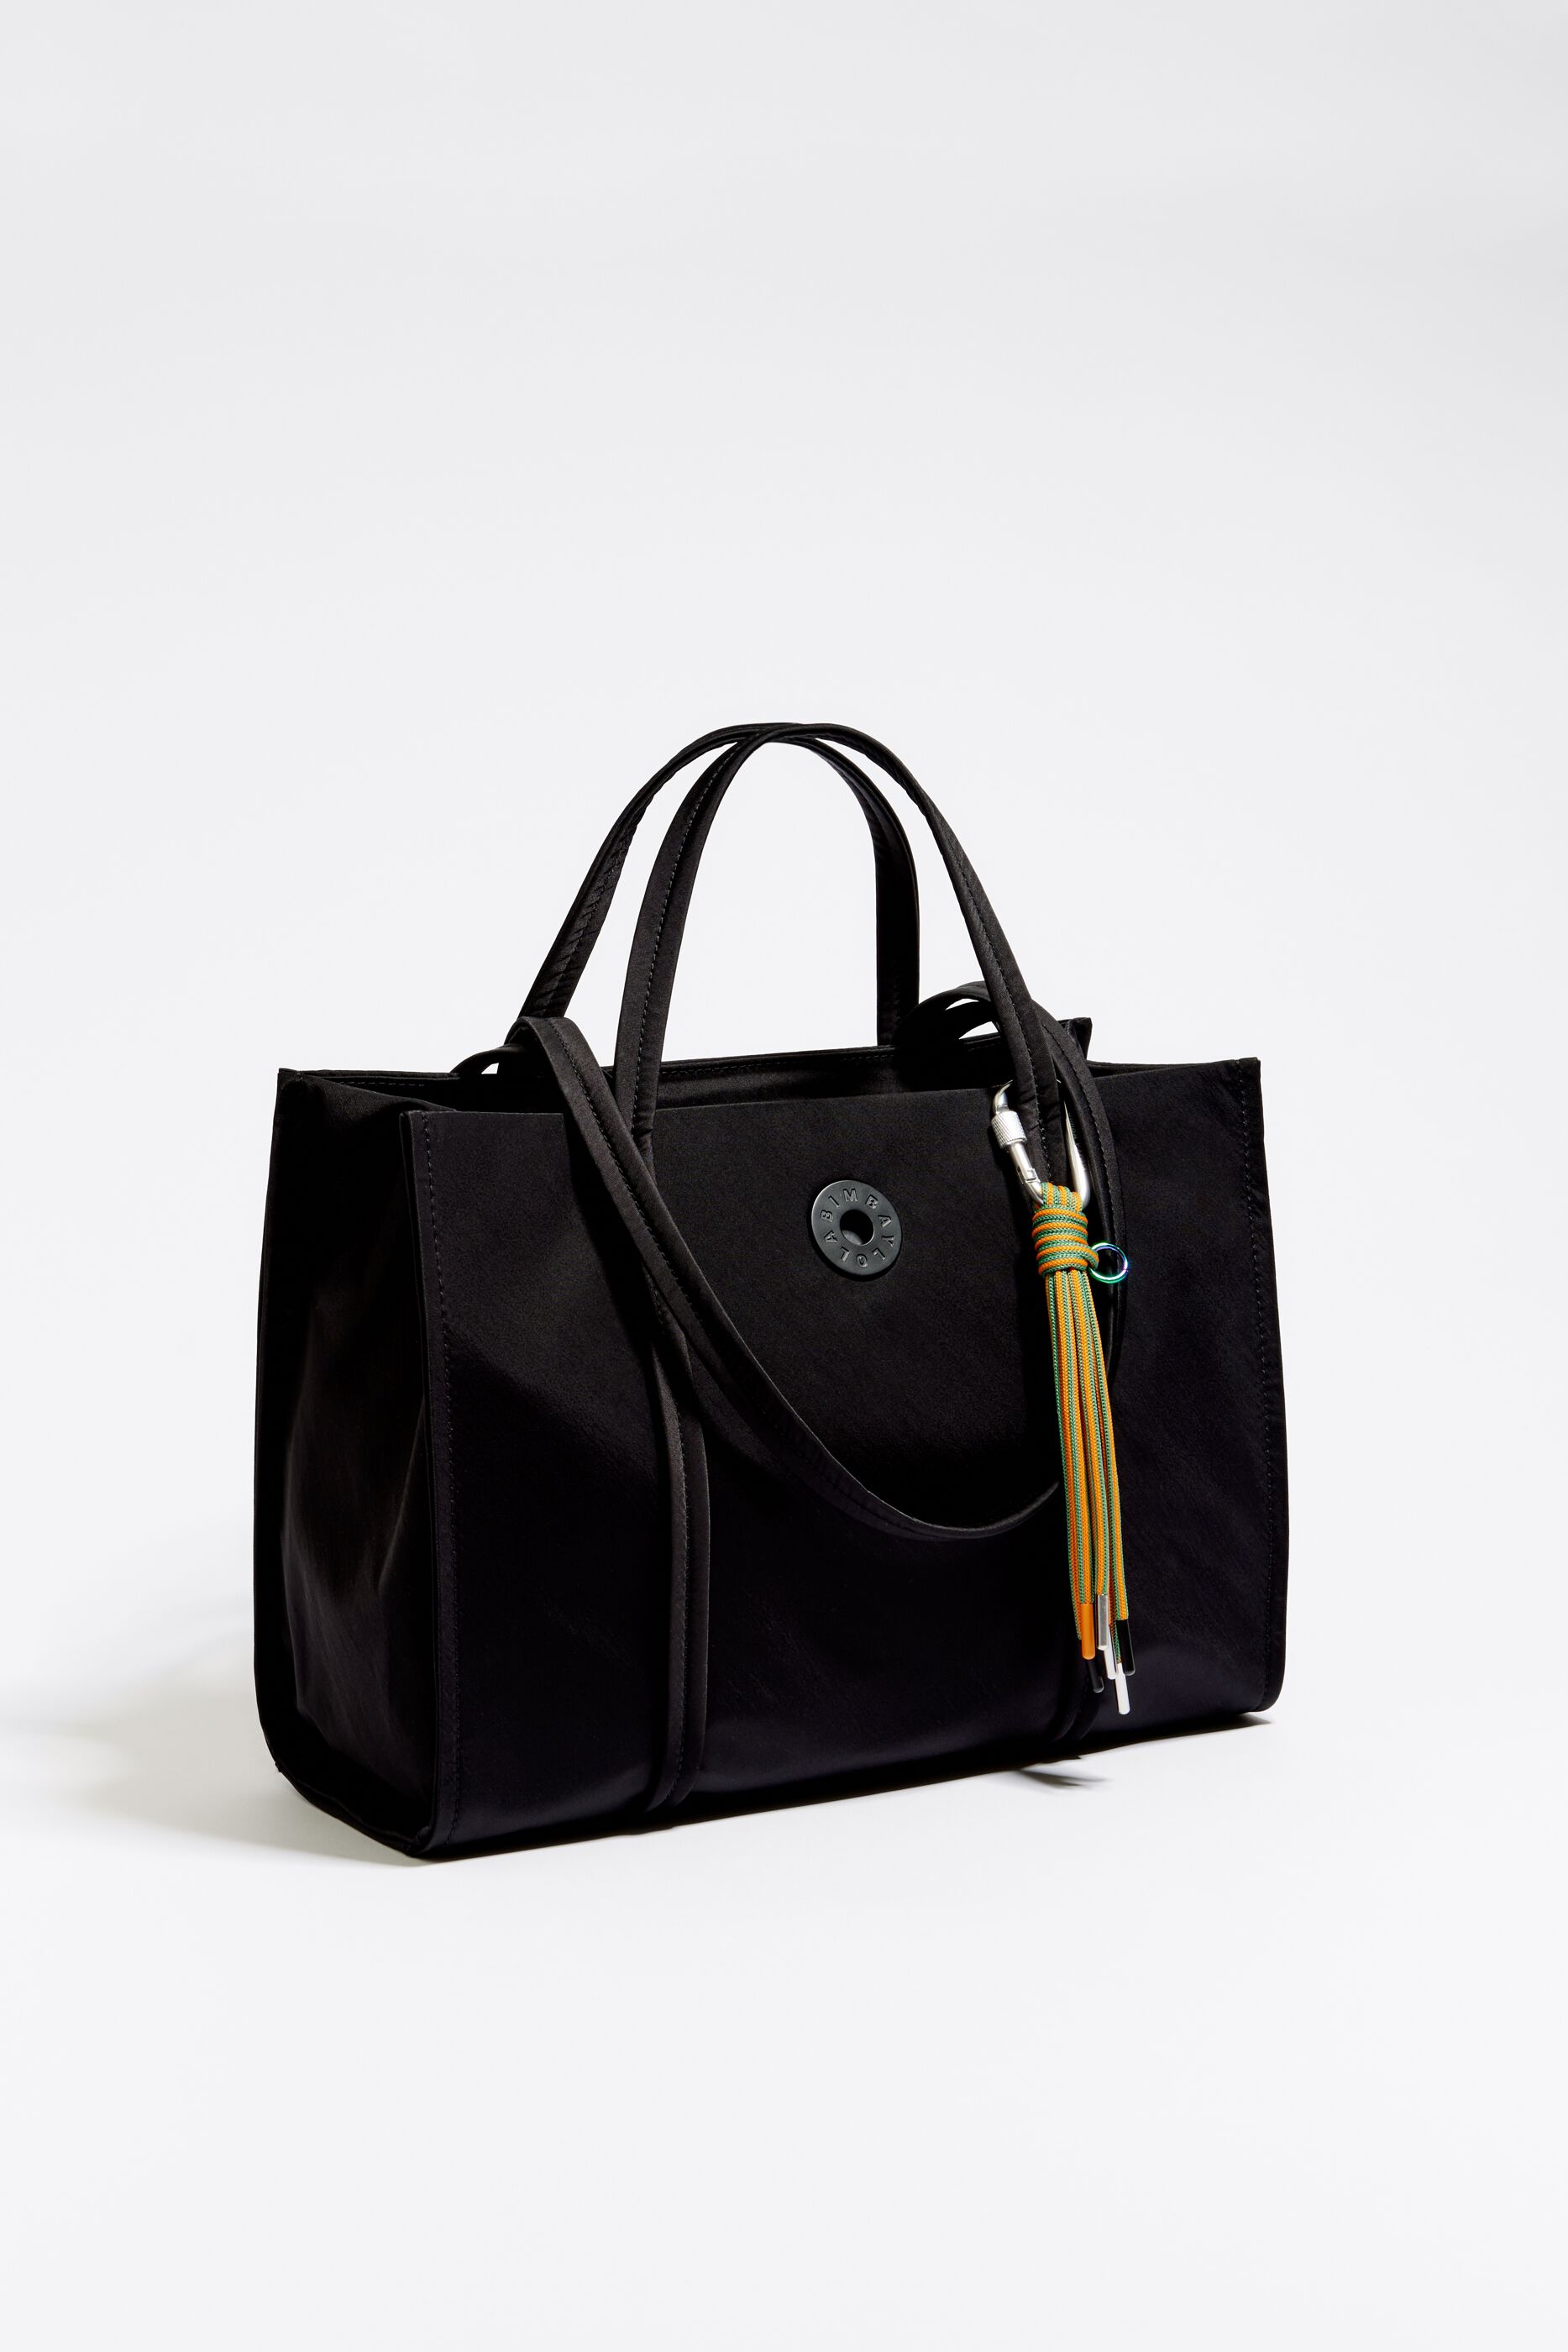 Wingman Bag: Women's Designer Small Tote Bag – Think Royln